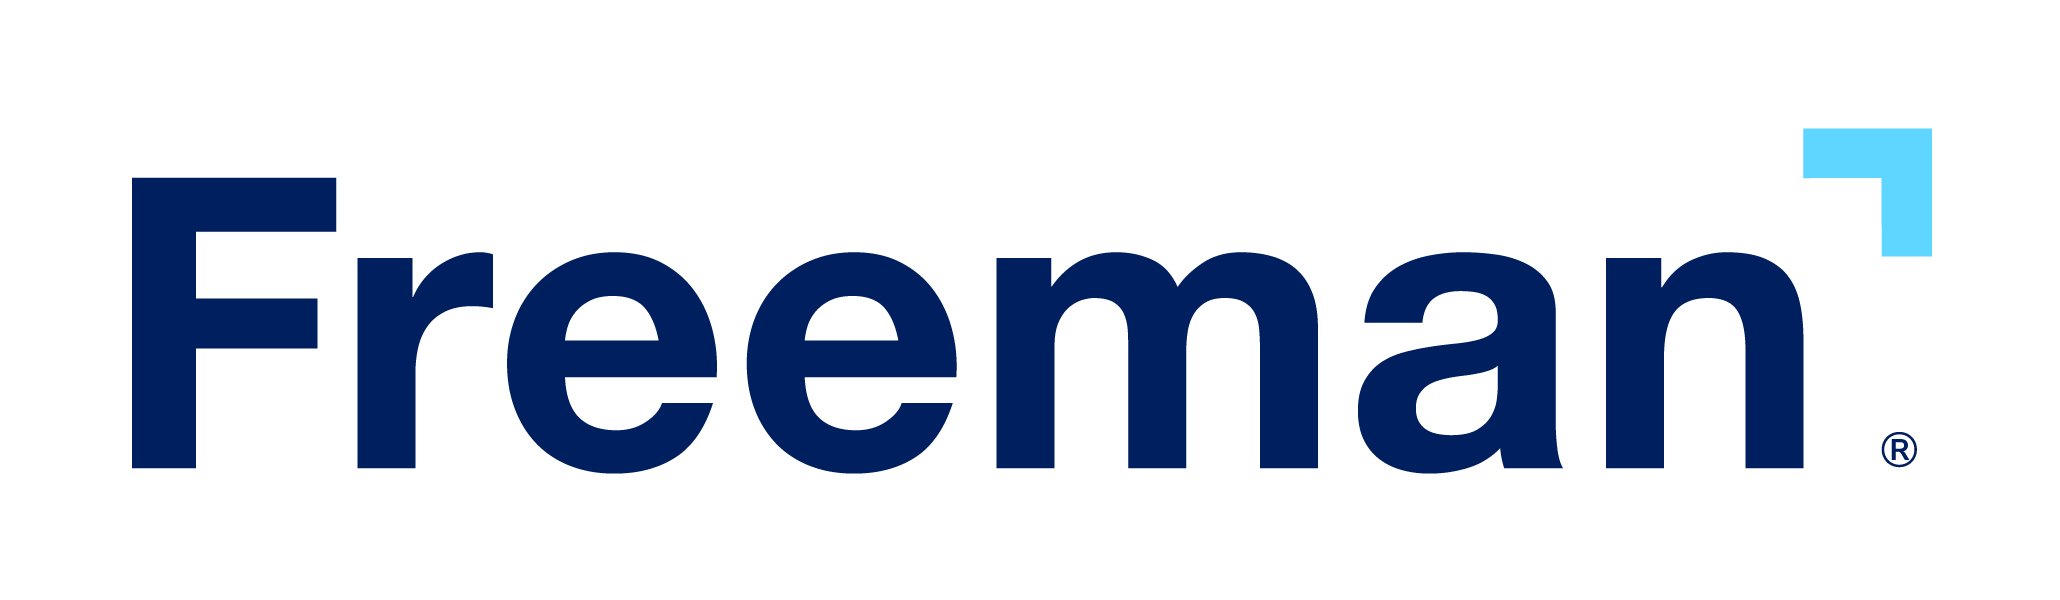 Freeman Company logo